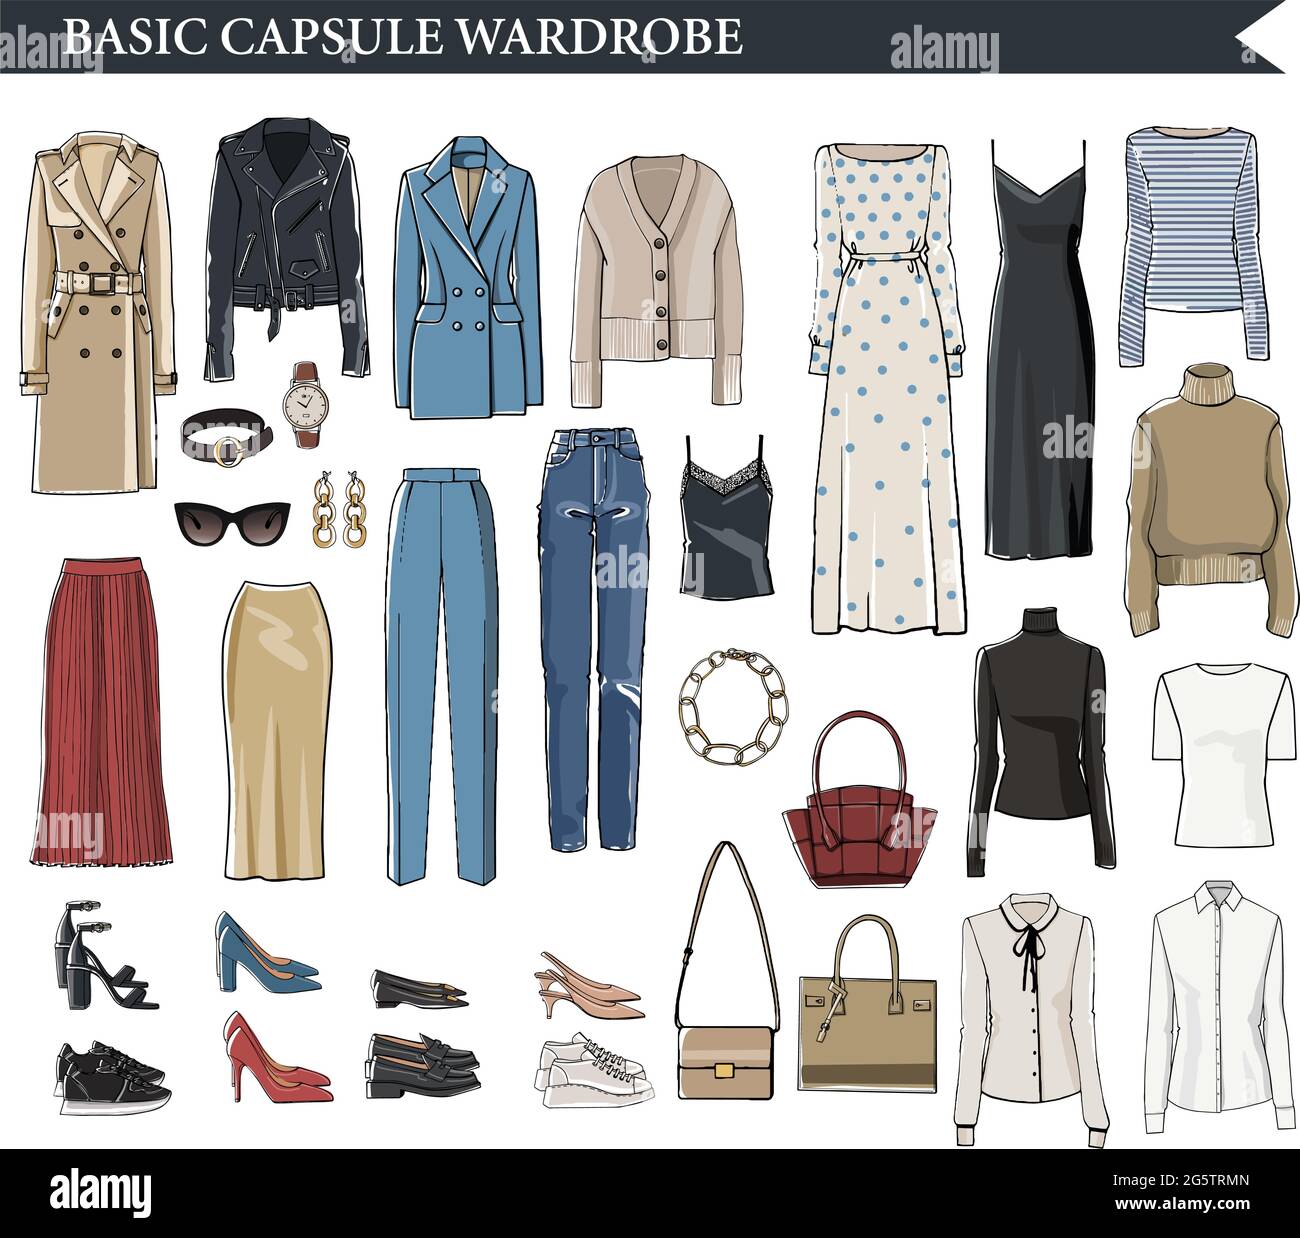 Basic capsule wardrobe for elegant women vector Stock Vector Image & Art -  Alamy